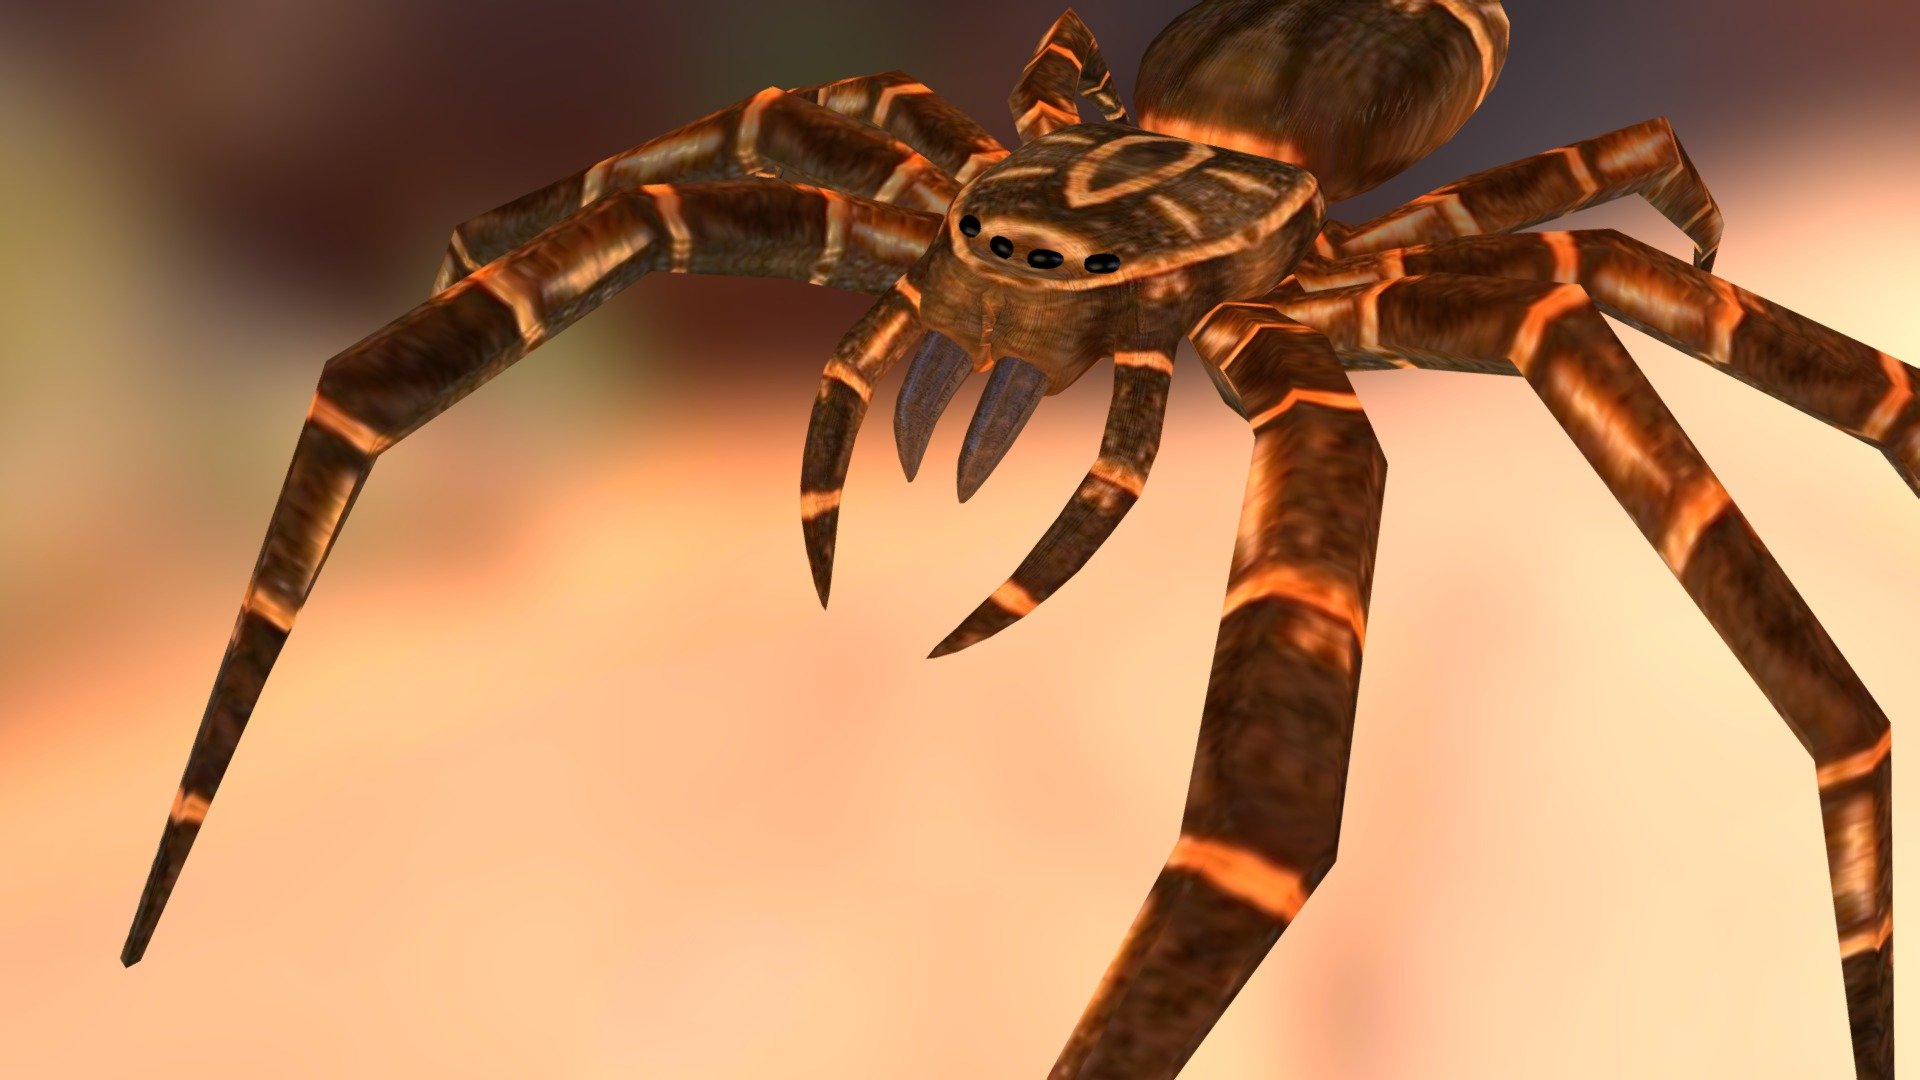 Controllable spider for the Blender Game Engine. (Blender2.62) http://www.blendswap.com/blends/view/26798 - Spider - Download Free 3D model by 3DHaupt (@dennish2010) 3d model